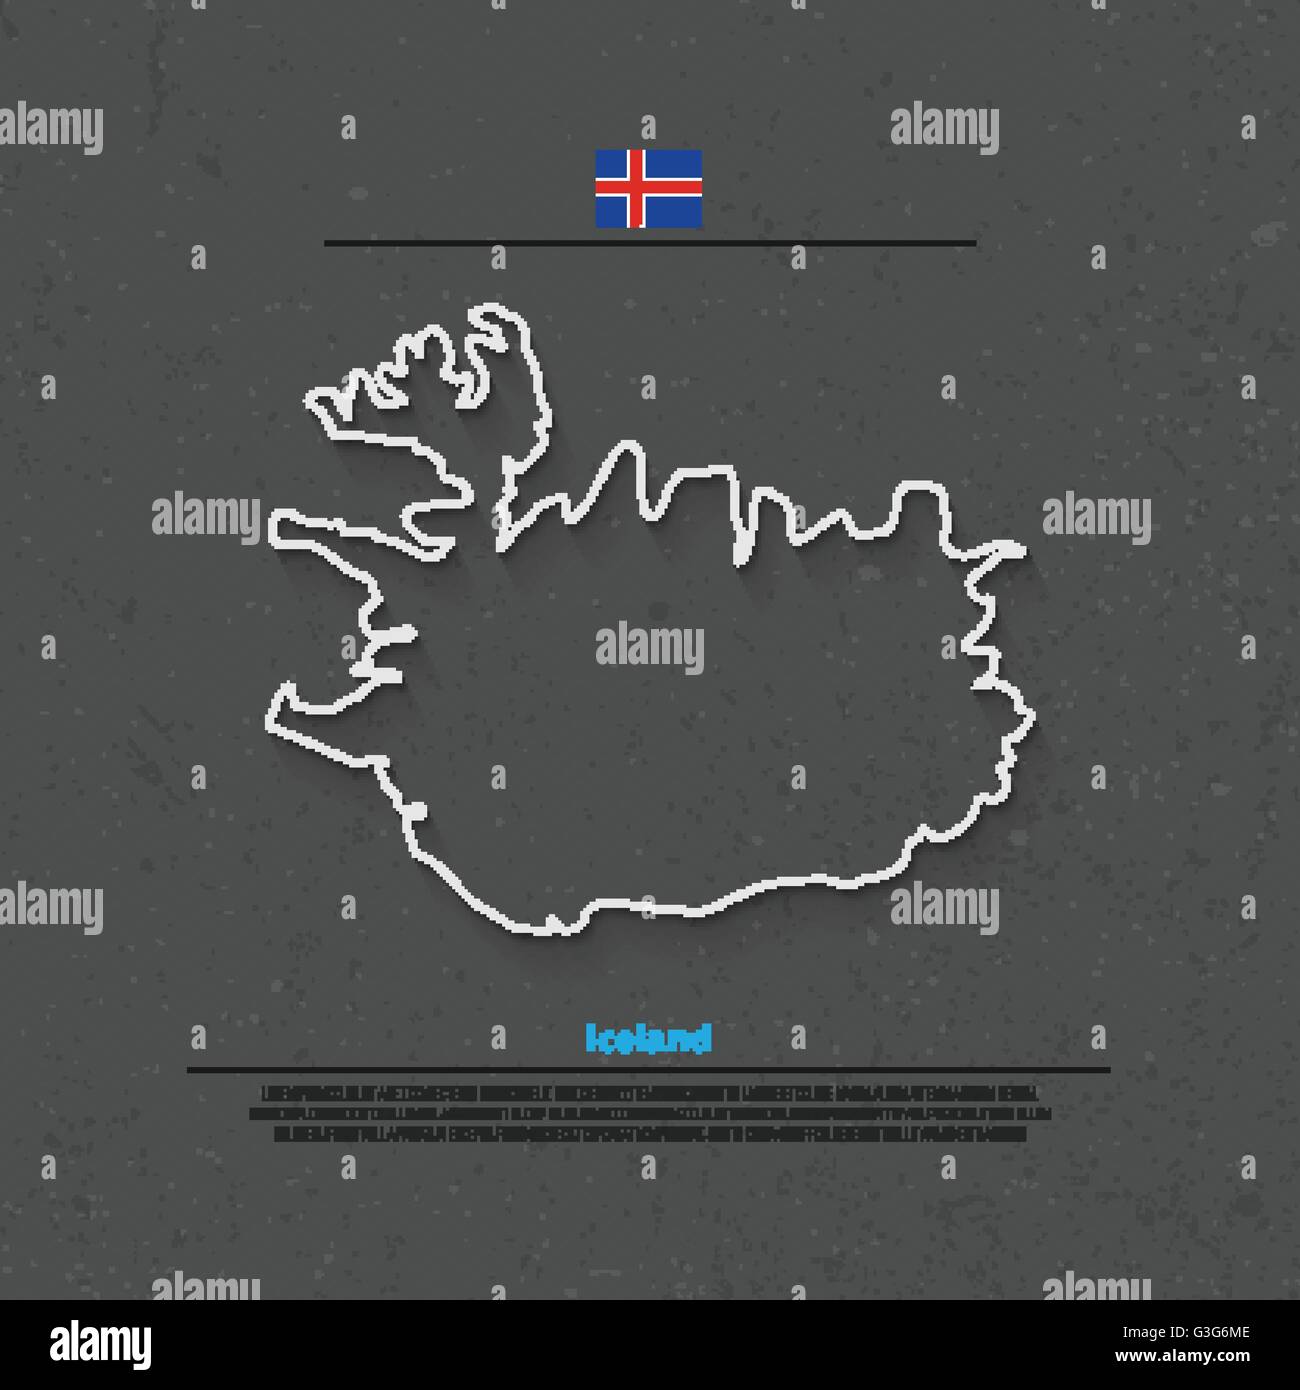 République d'Islande carte isolée et drapeau officiel icons. vector carte politique de l'Islande sur l'icône de la ligne mince. L'île nordique géo Pays Illustration de Vecteur